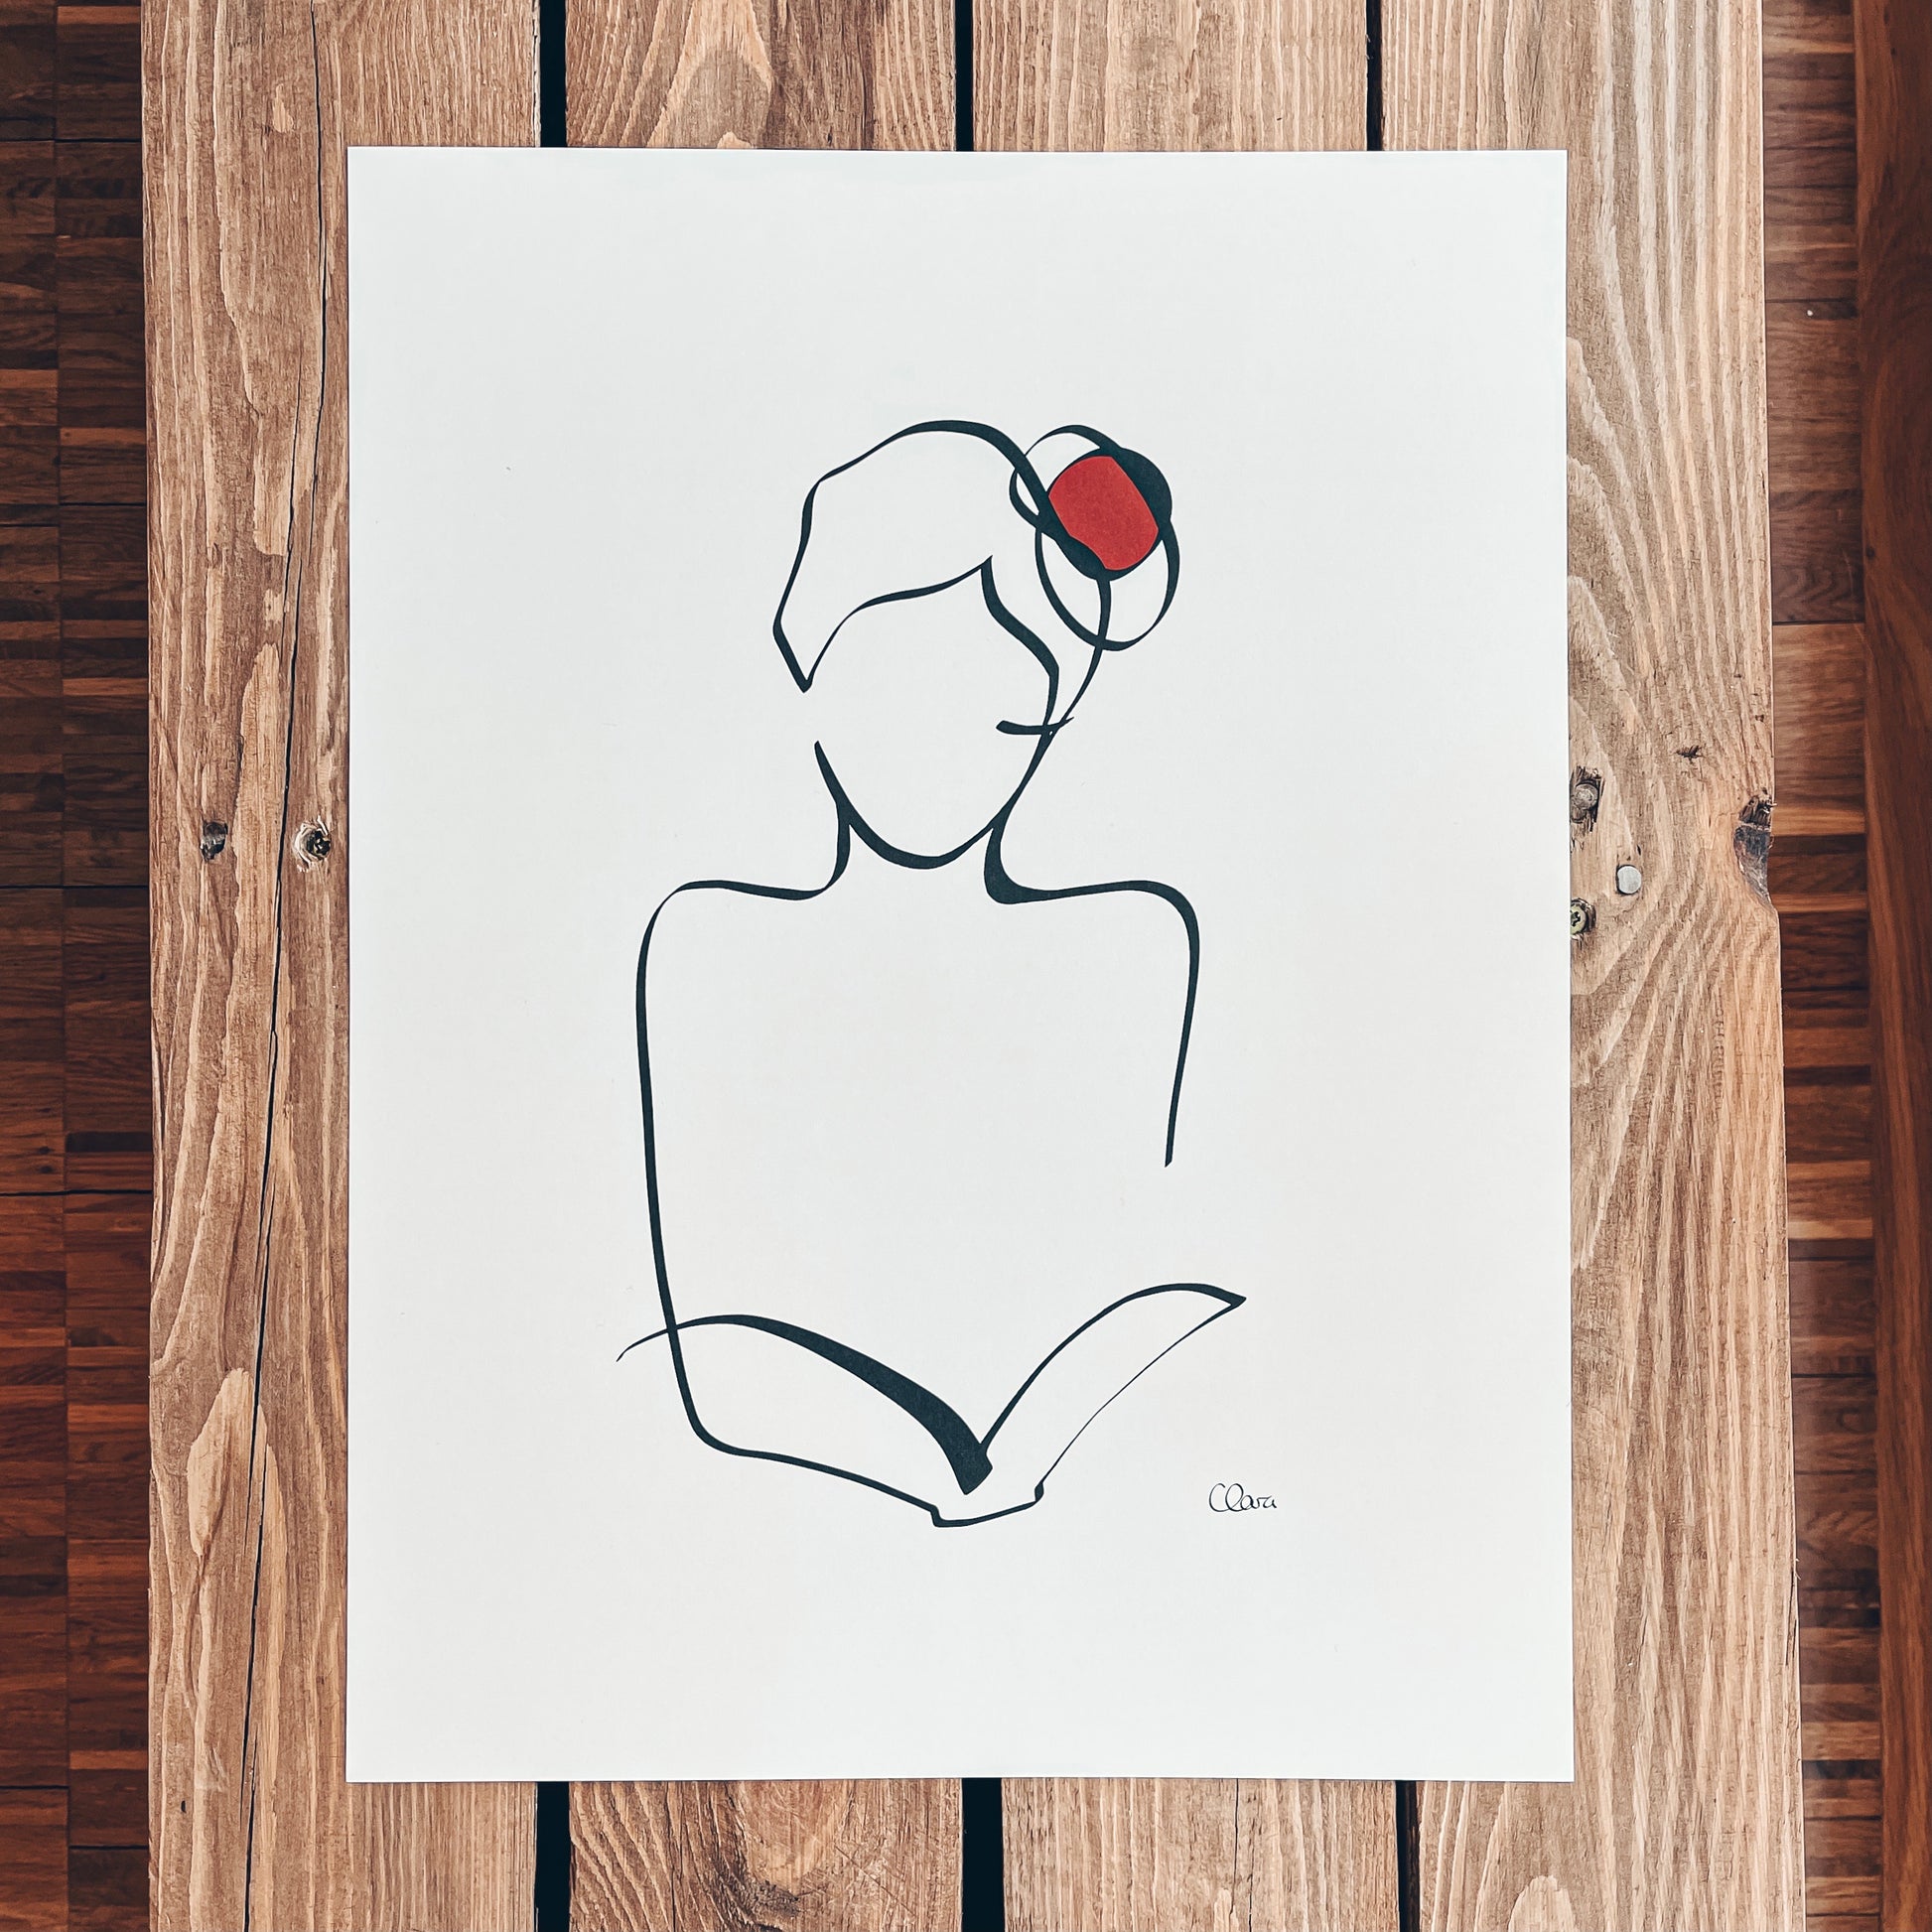 Frauen und Bücher Nr. 8-Kunstdruck-JUDITH CLARA-30x40 cm *Limited* (creme weiß) Papier 300g-one-line-art